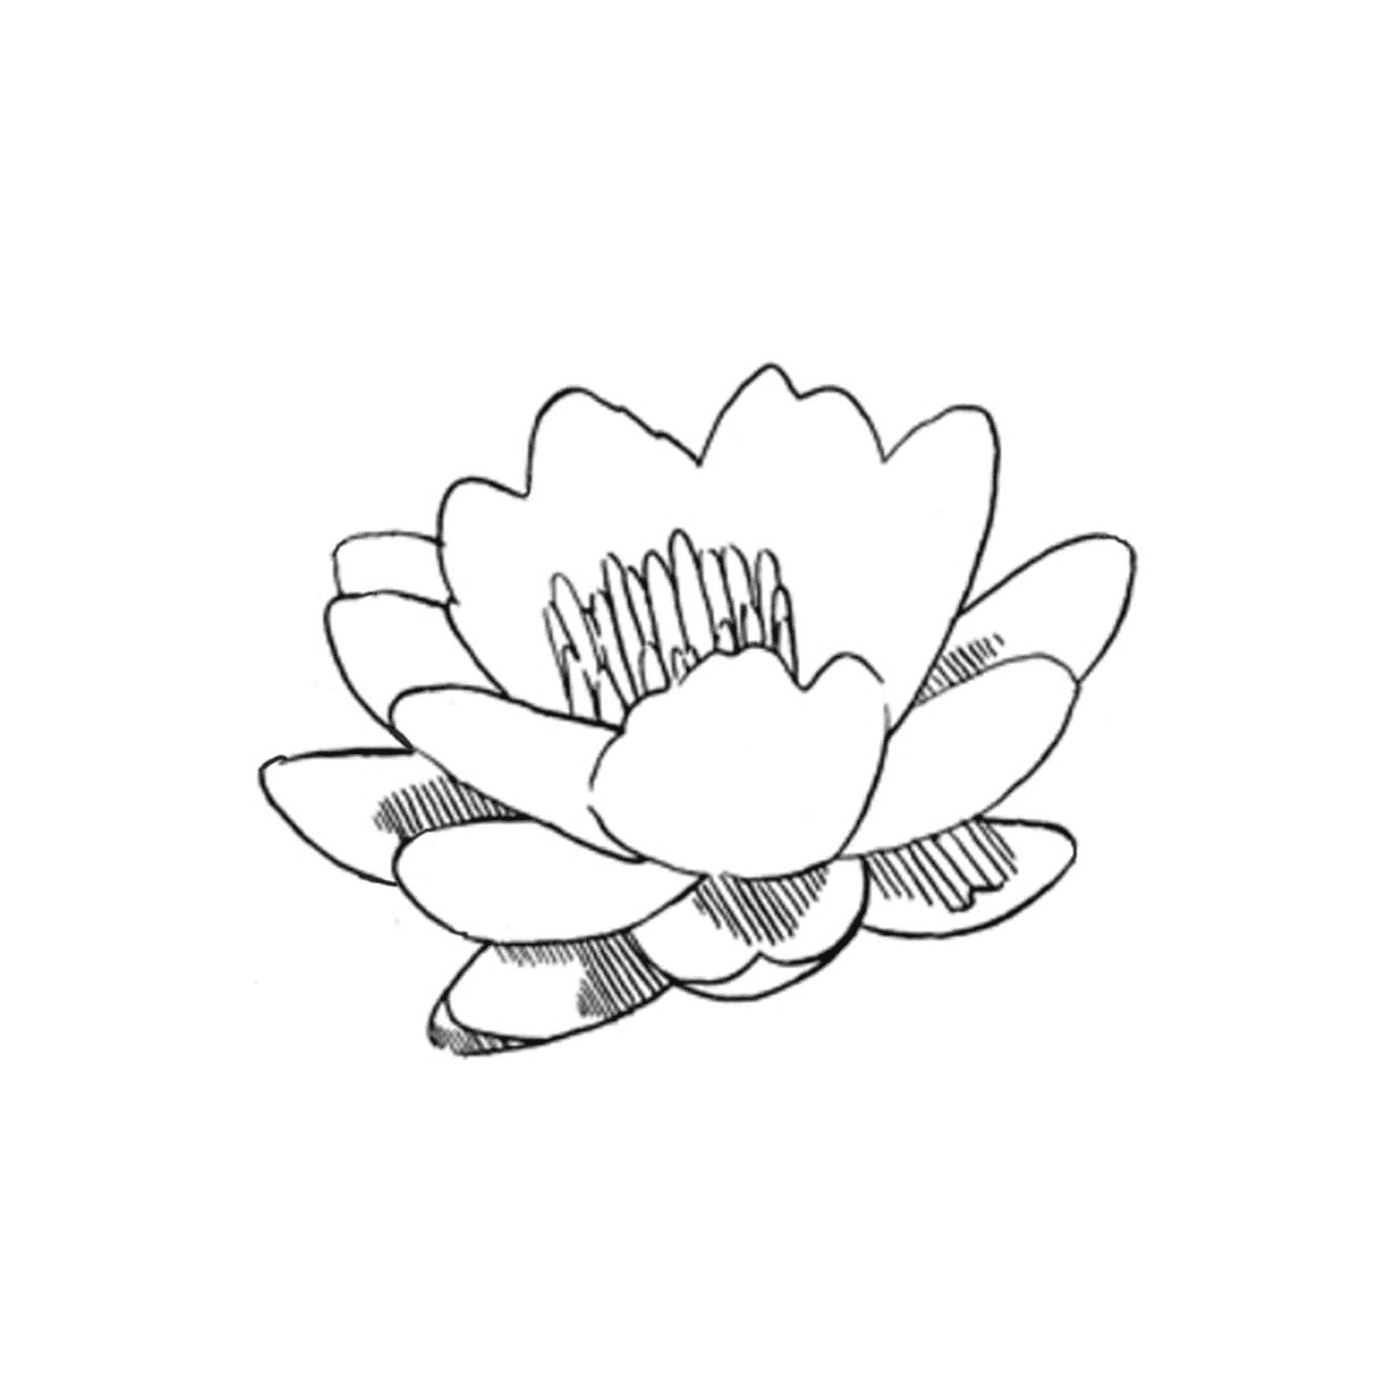  Un fiore di loto 